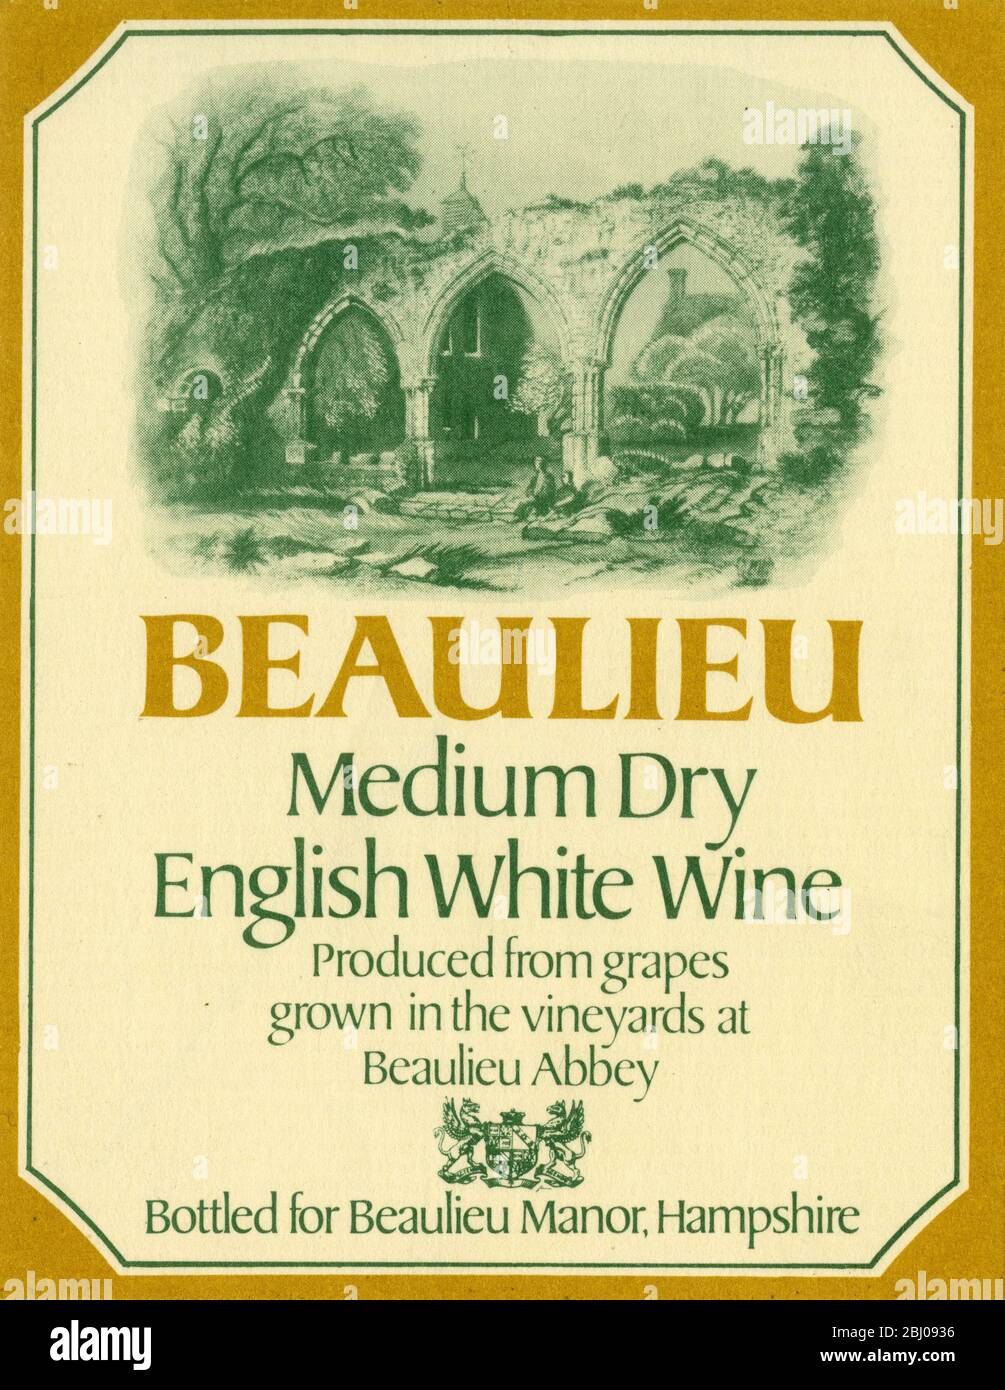 Weinetikett. - Beaulieu. Mitteltrockener Englischer Weißwein. Hergestellt aus Trauben, die in den Weinbergen der Abtei Beaulieu gewonnen werden. Abgefüllt für Beaulieu Manor, Hampshire. Stockfoto